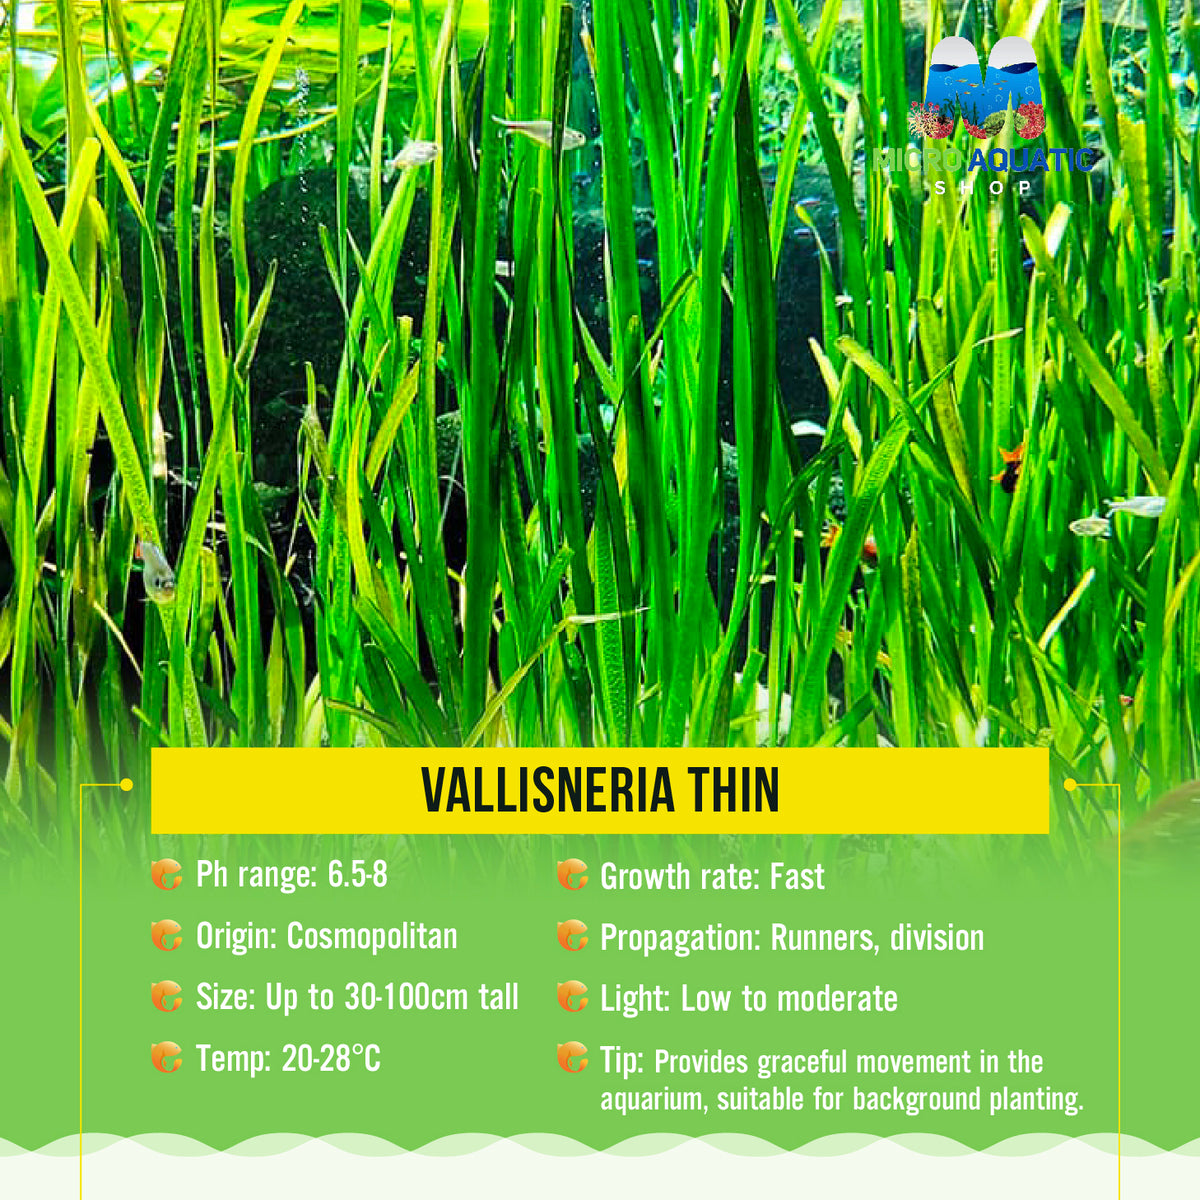 Vallisneria Thin